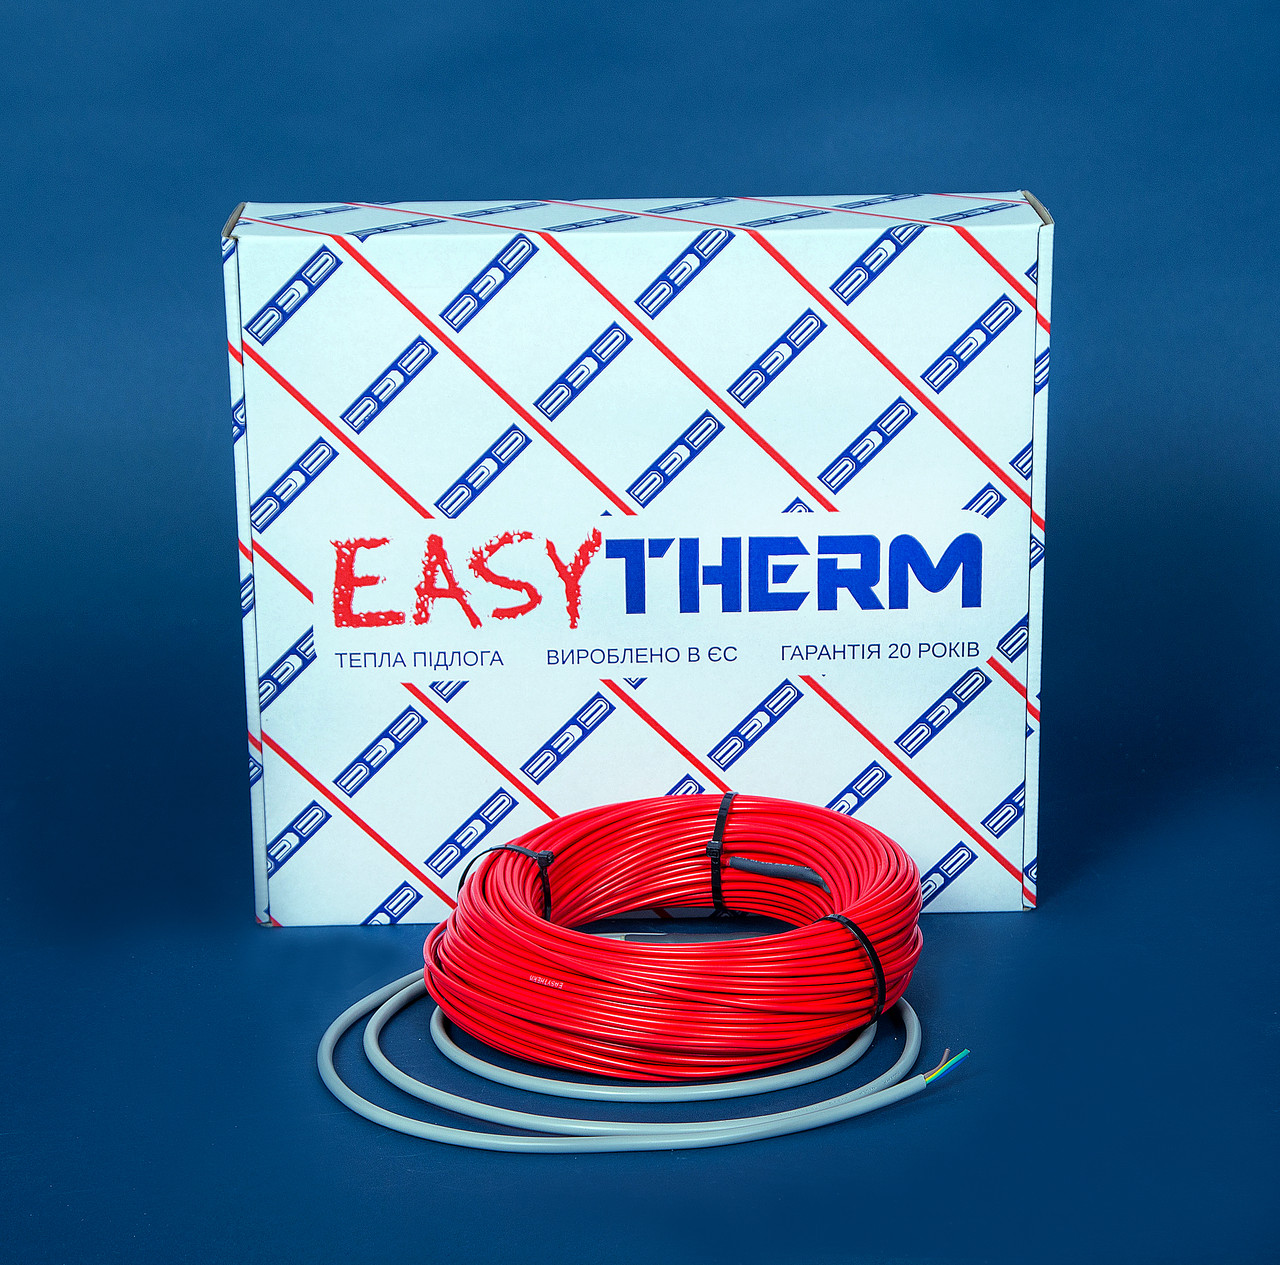 Электрический теплый пол EasyTherm Easycable 95.0 отзывы - изображения 5